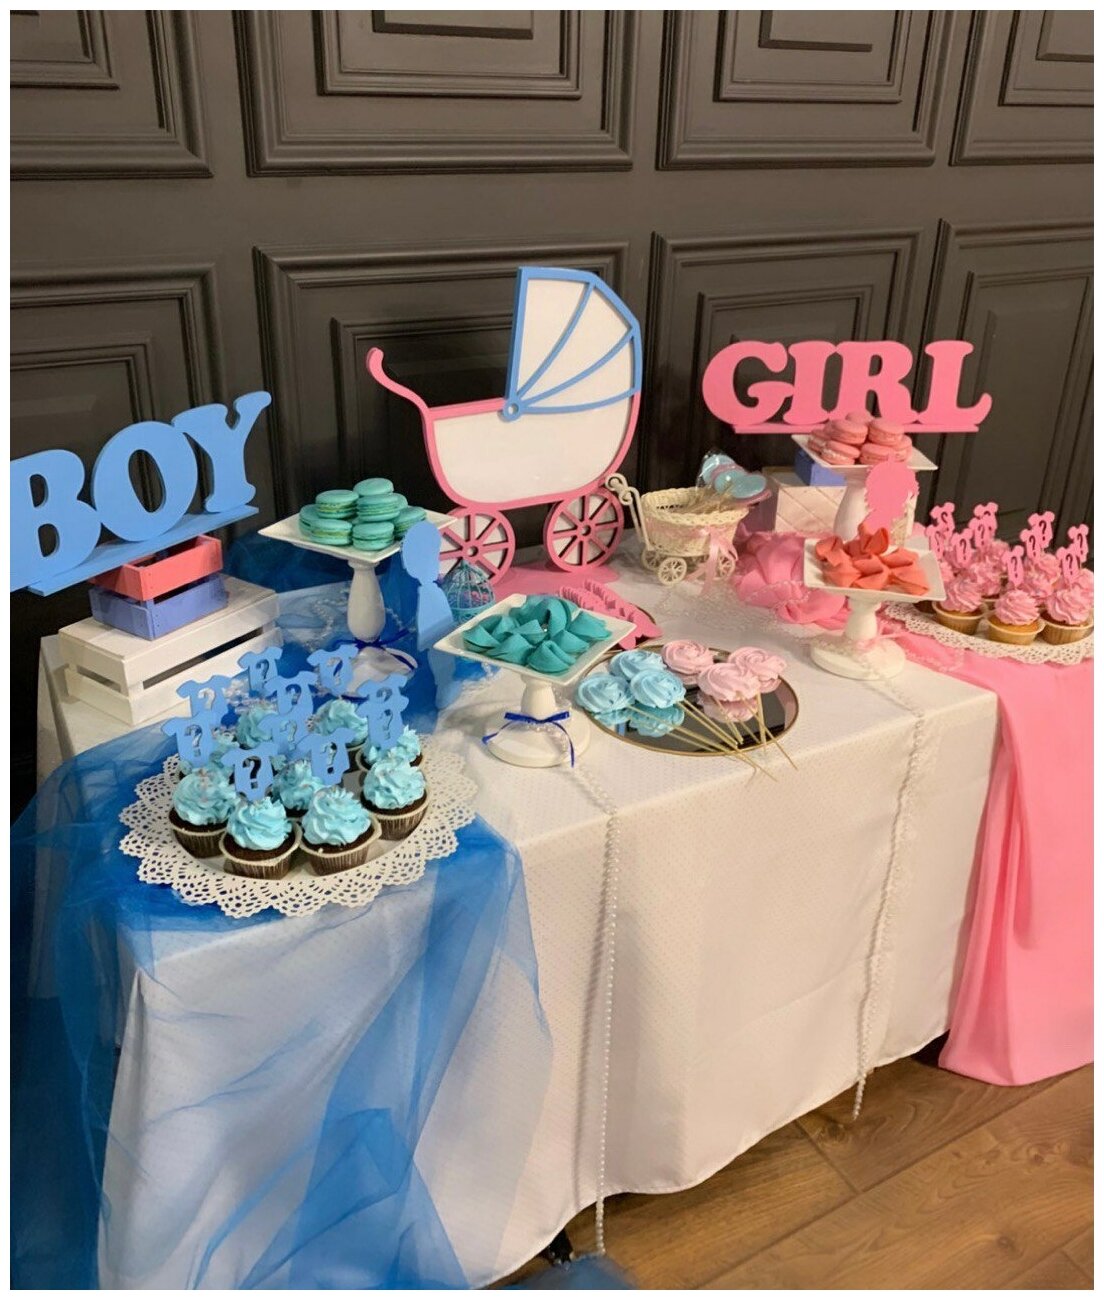 Набор для праздника BOY or GIRL gender party, гендер пати, рождение ребенка мальчик или девочка, узнать пол ребенка